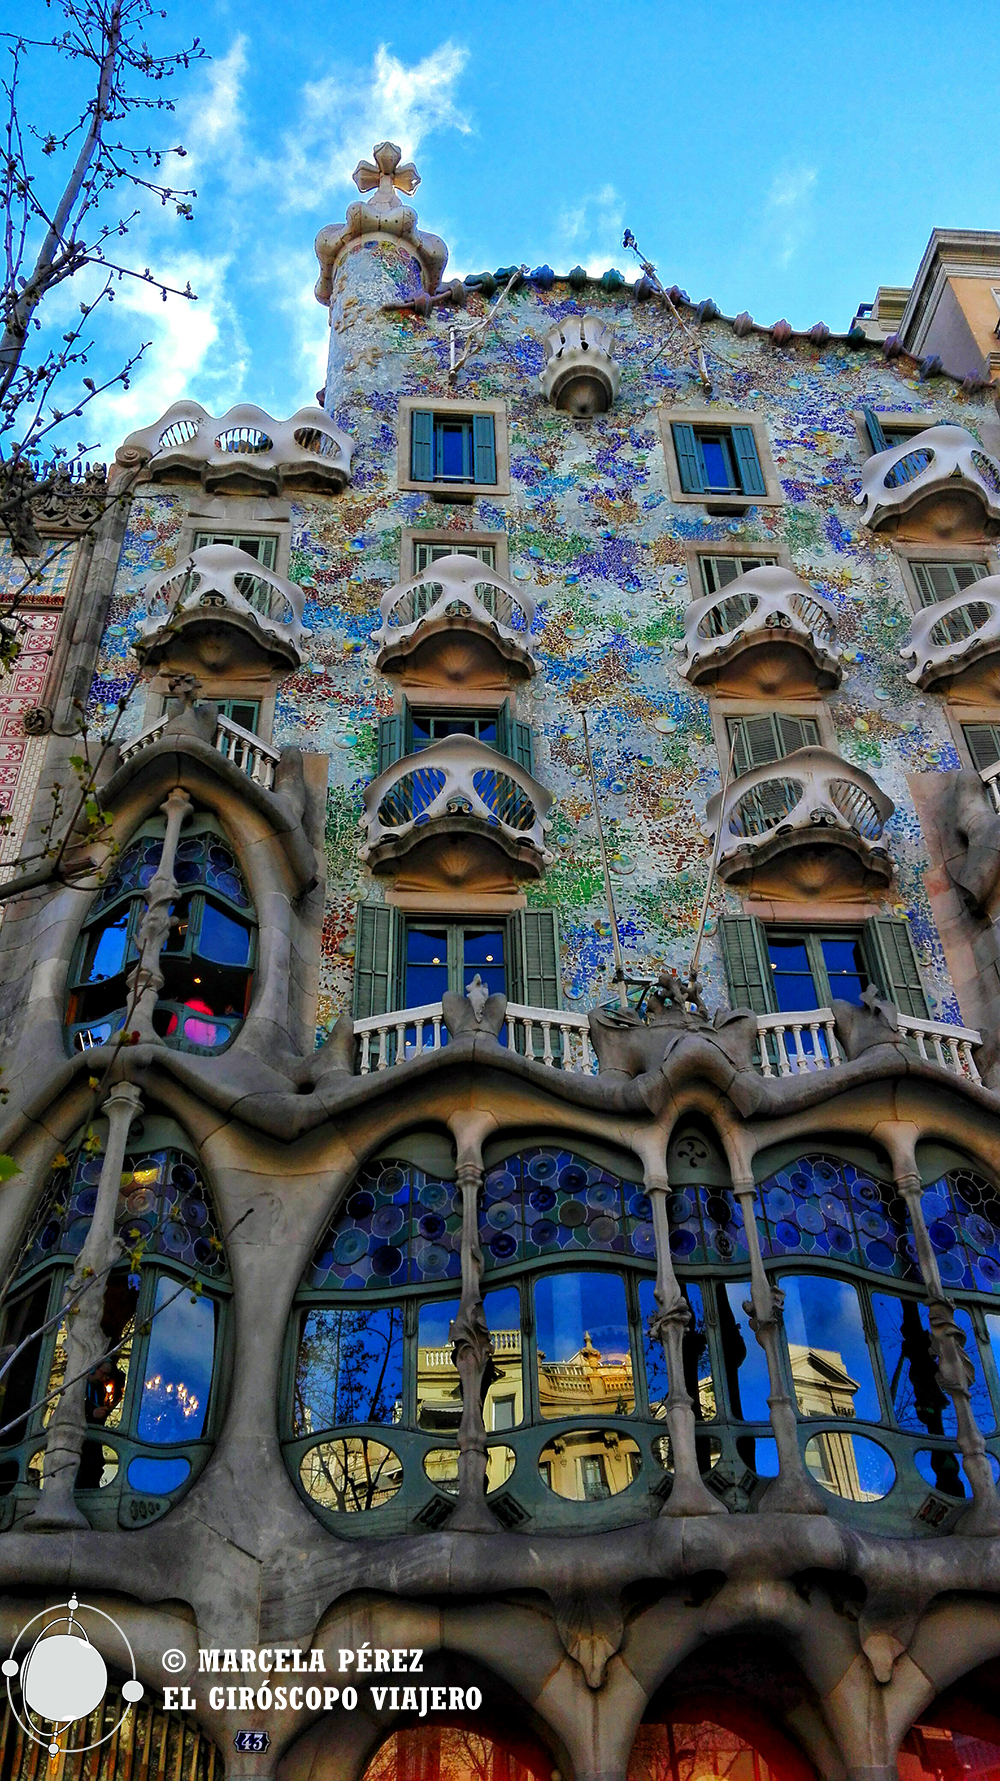 La inconfundible fachada de Casa Batlló